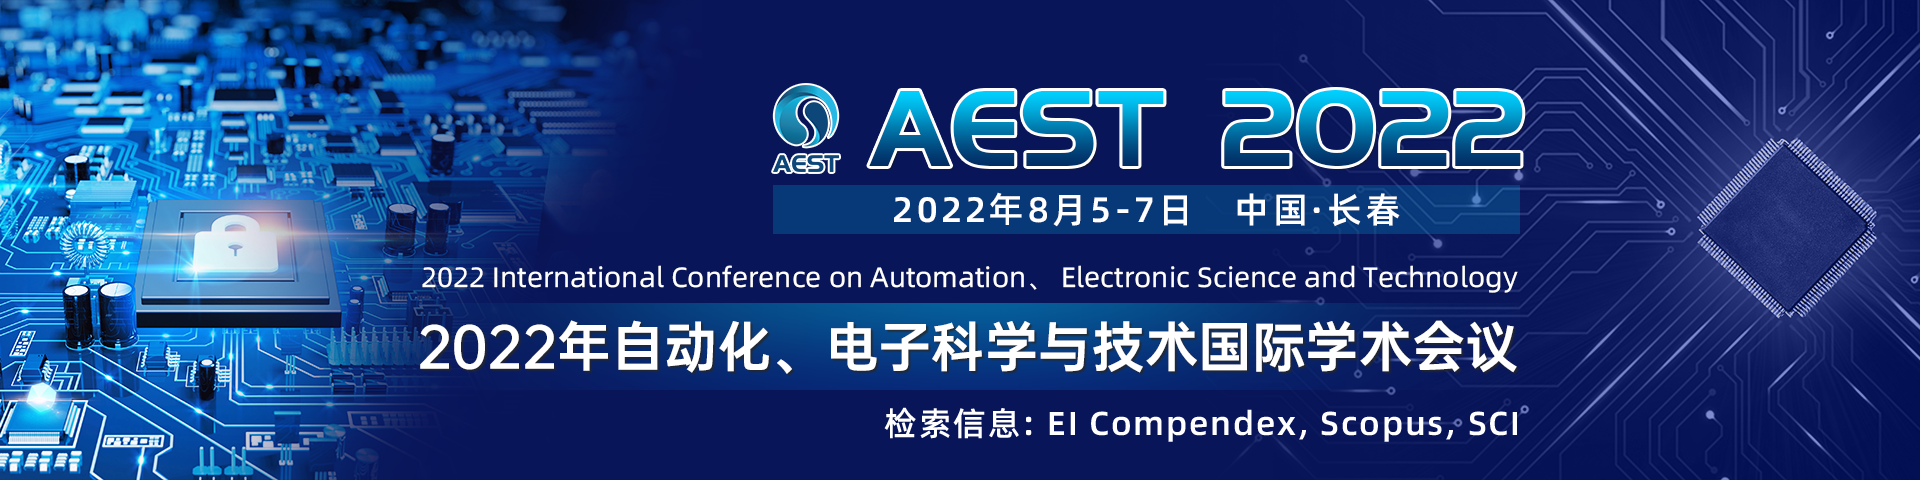 8月长春-AEST2022-艾思平台1920x480-陈军-20220112.png